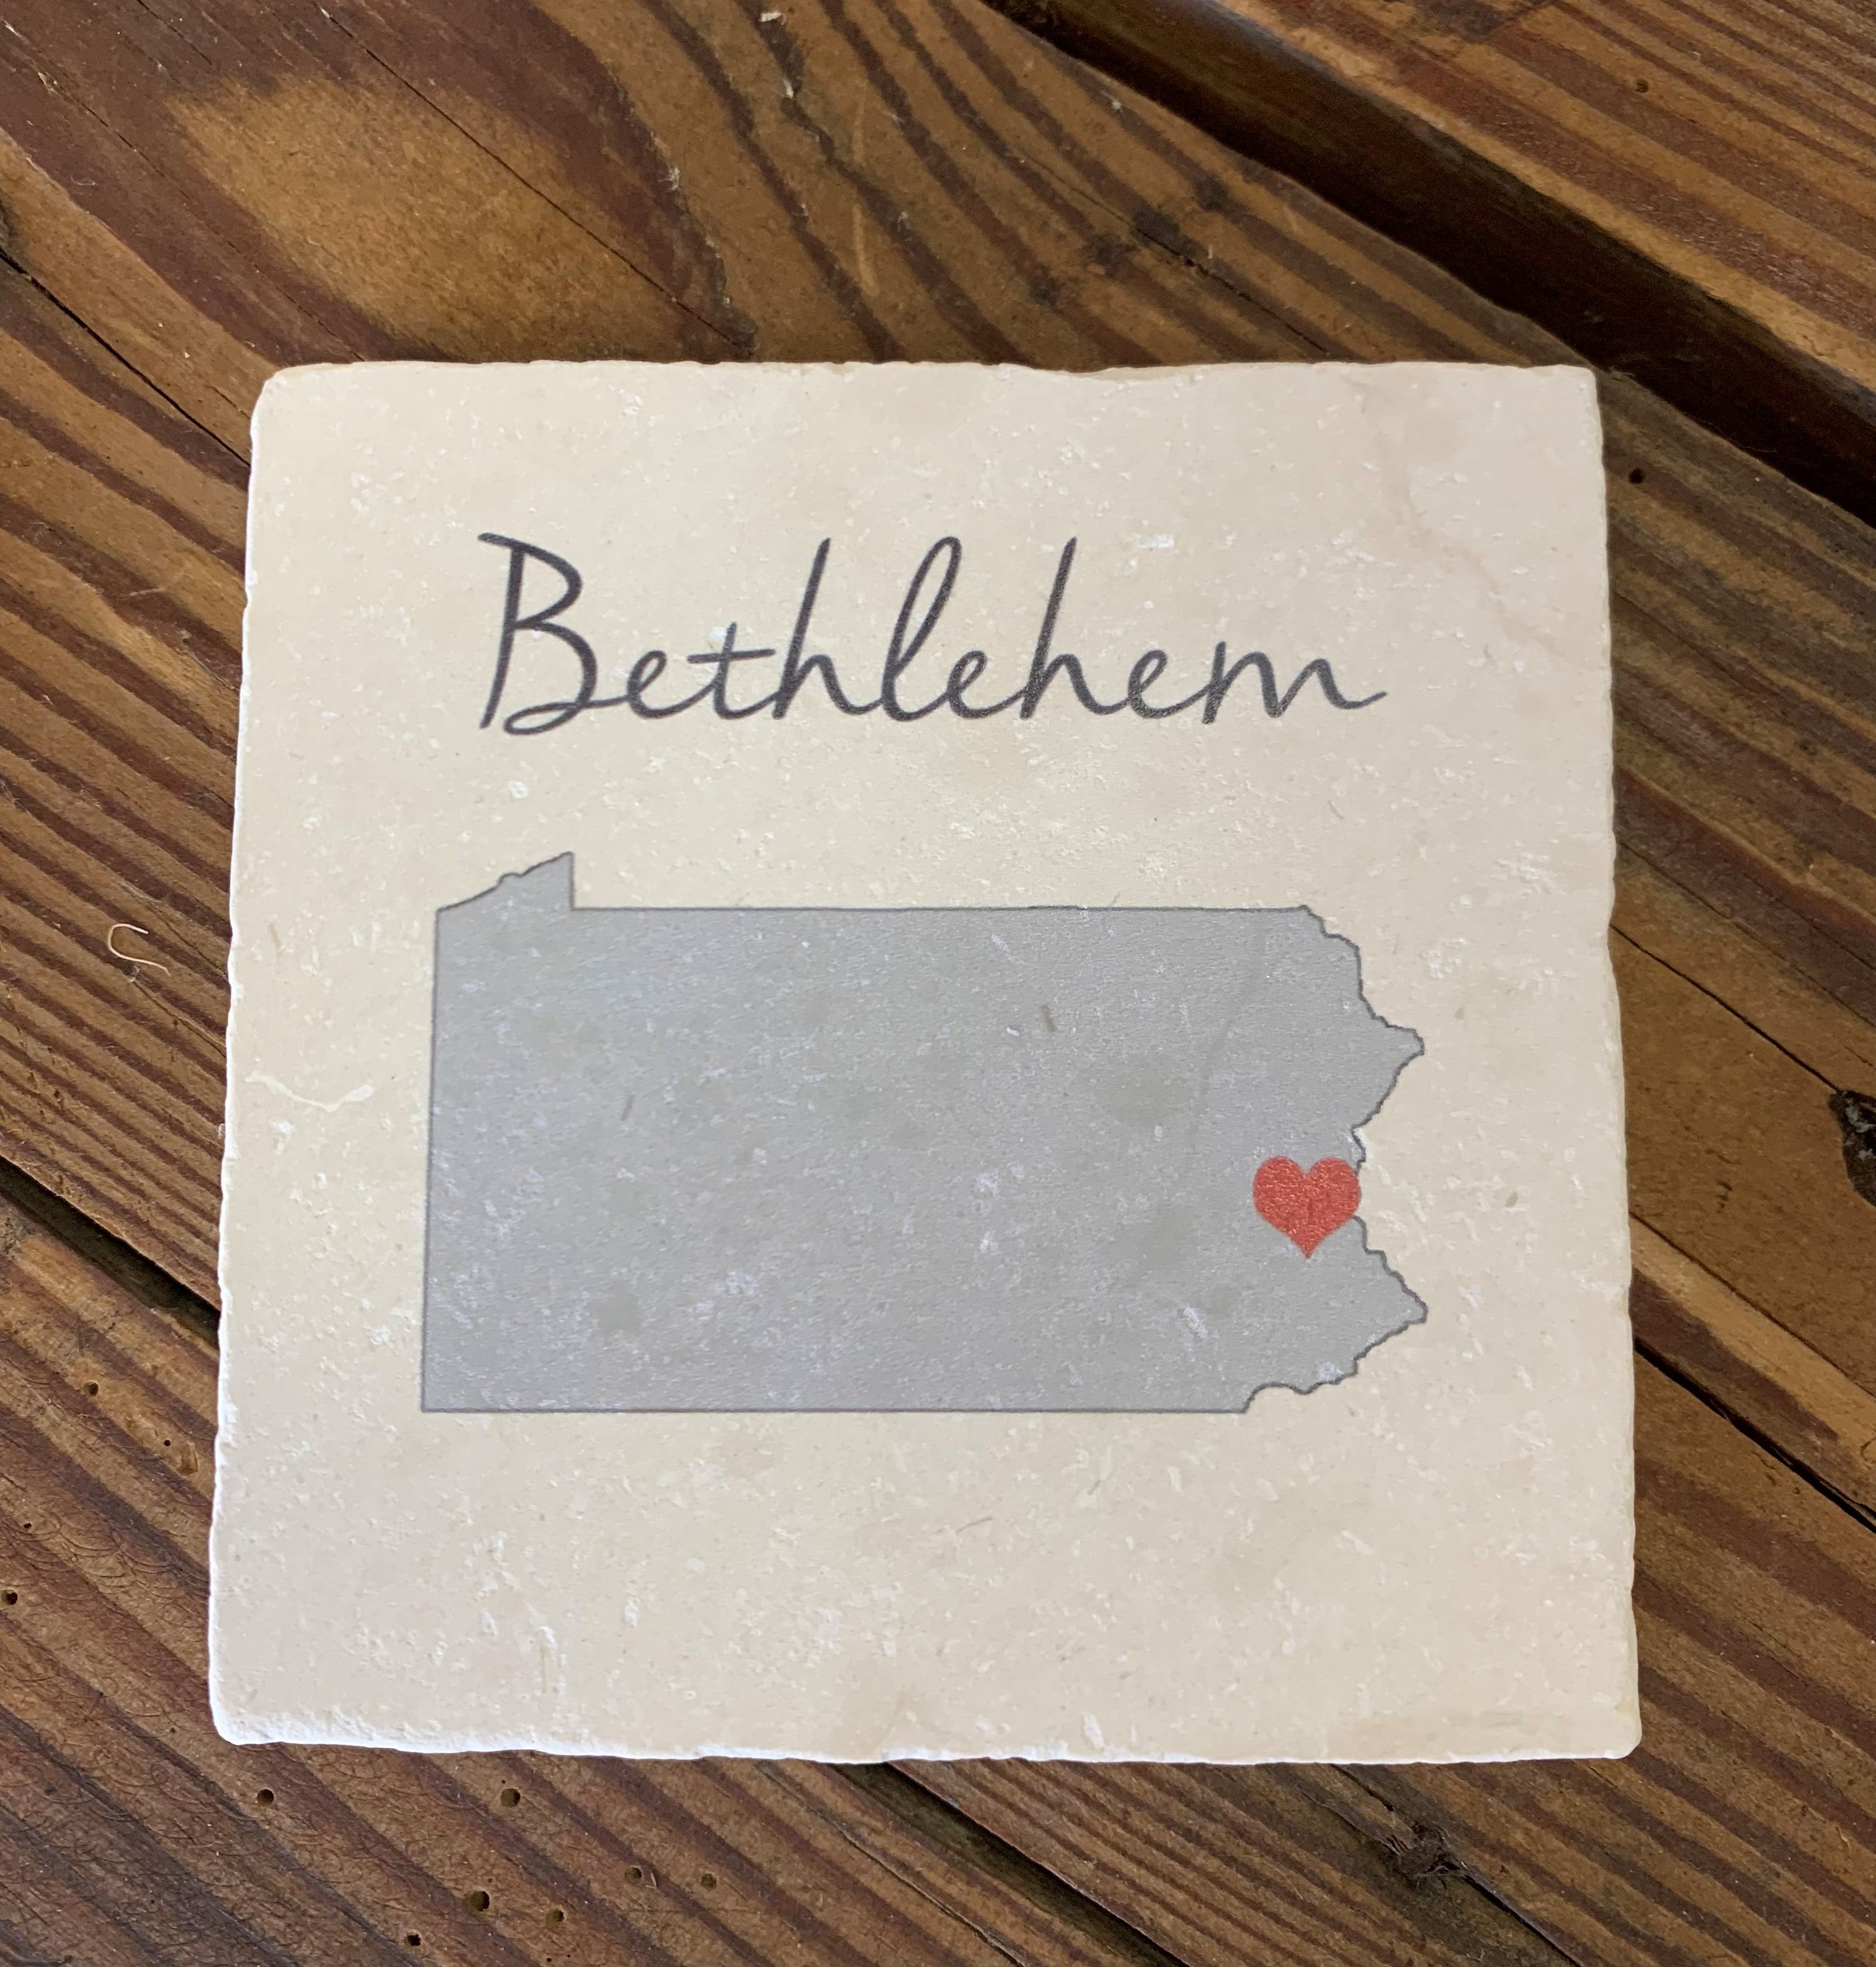 Bethlehem Ceramic Coaster